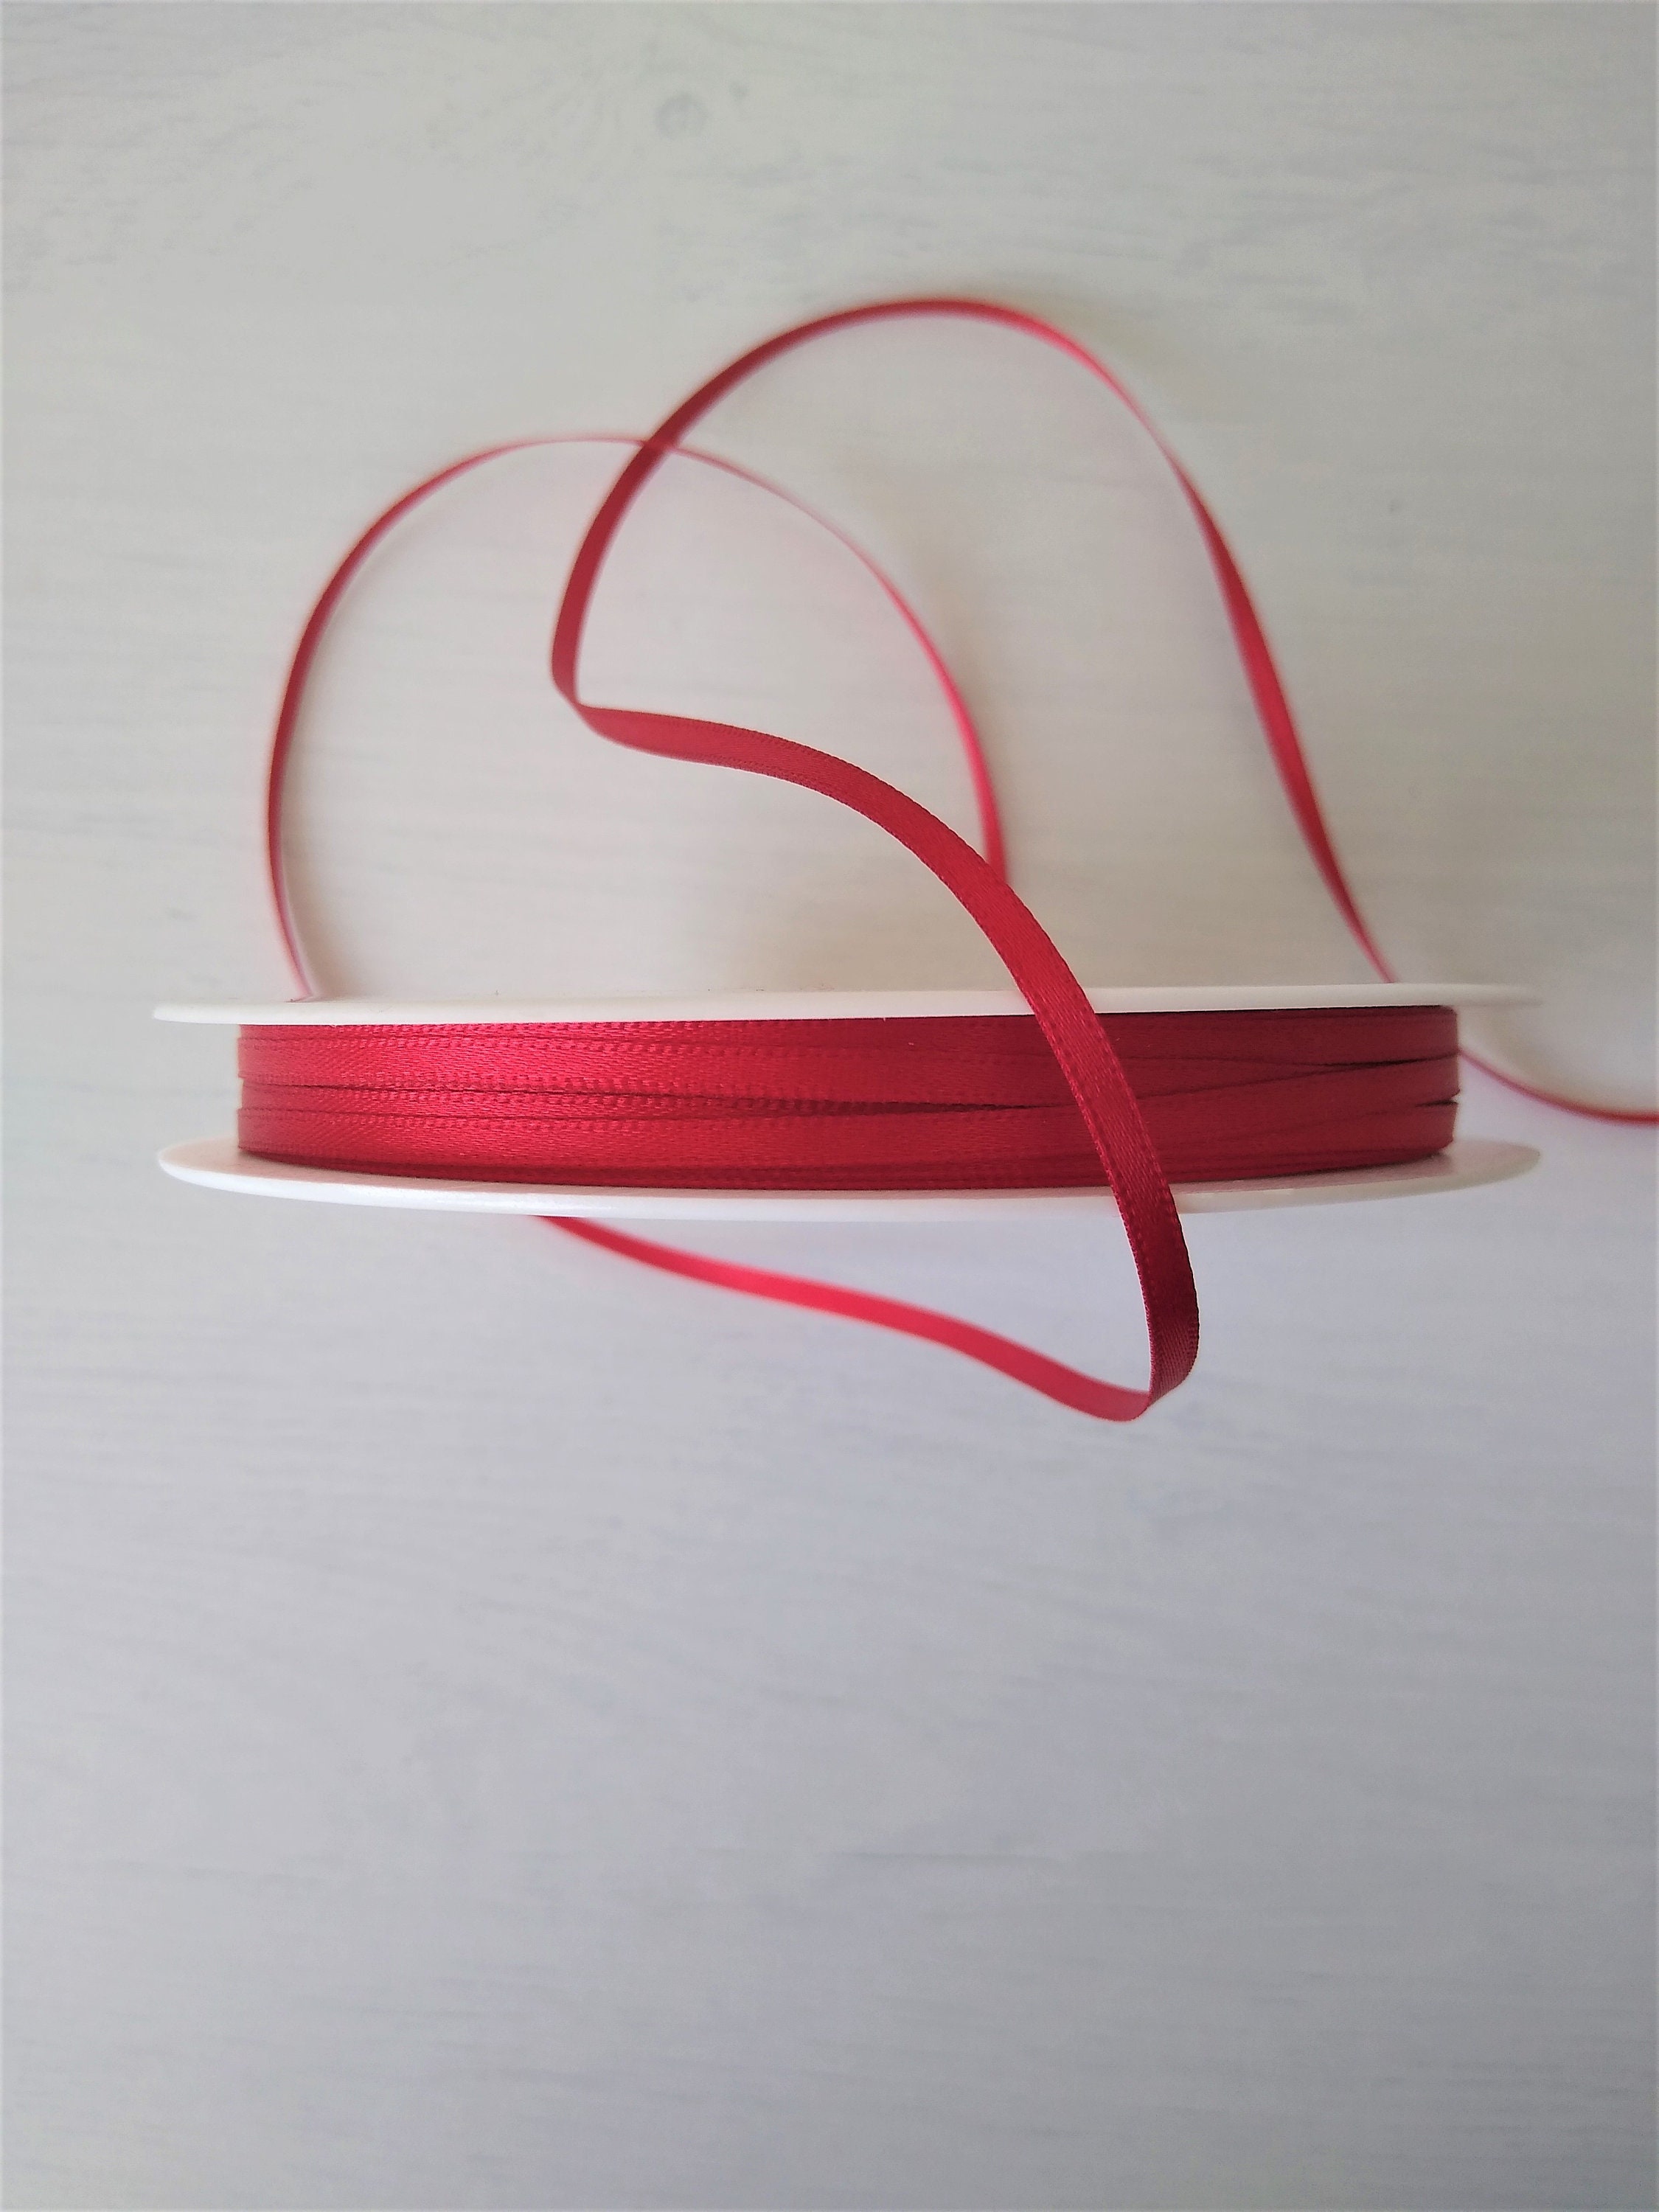 Cinta roja satinada de 3 mm, cinta shindo delgada de 3 mm, cinta de satén  roja para buzón de correos, suministros de artesanía para fabricación de